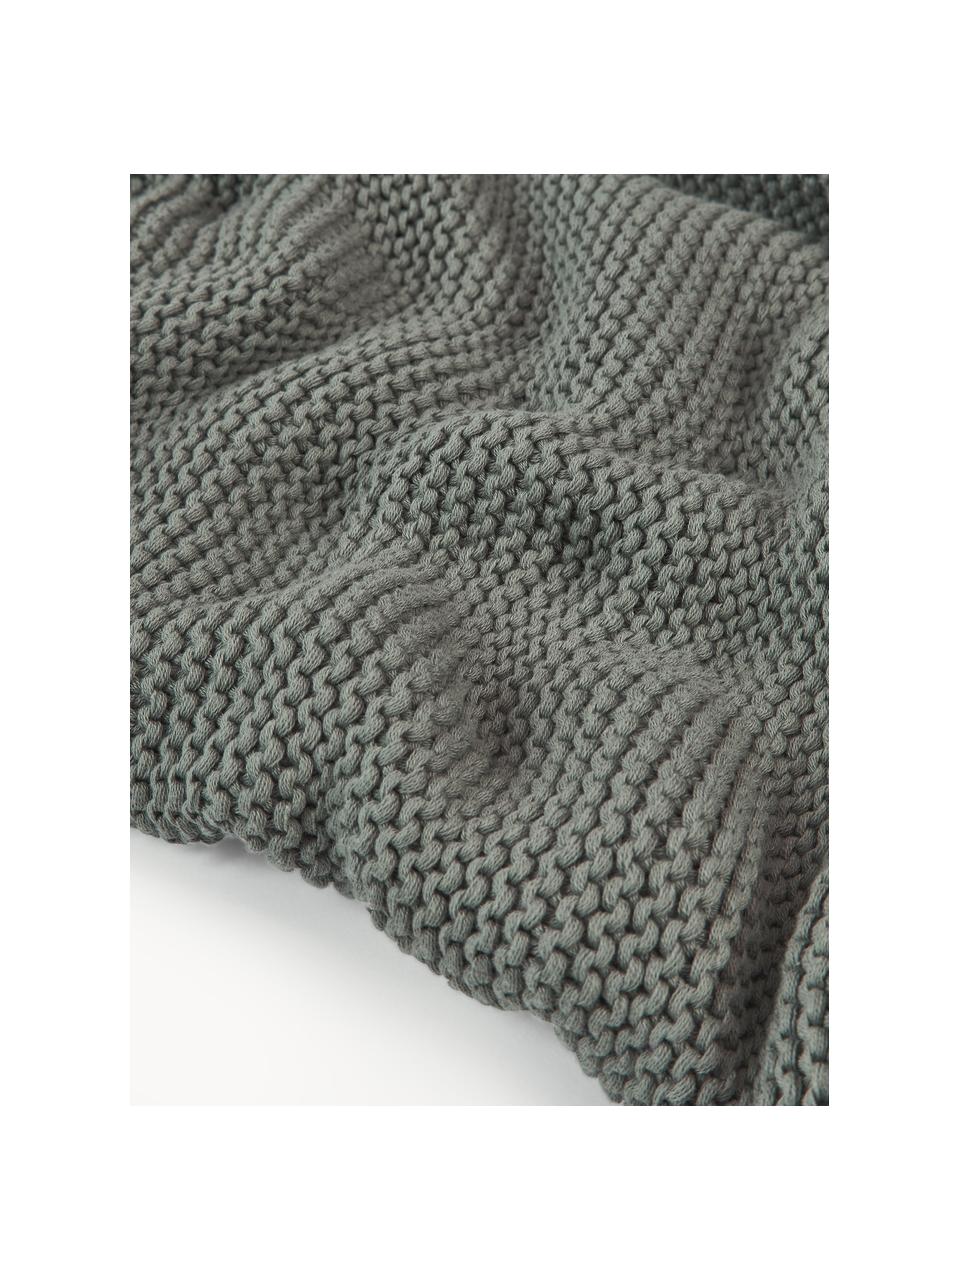 Coperta a maglia in cotone organico Adalyn, 100% cotone organico, certificato GOTS, Verde salvia, Larg. 150 x Lung. 200 cm